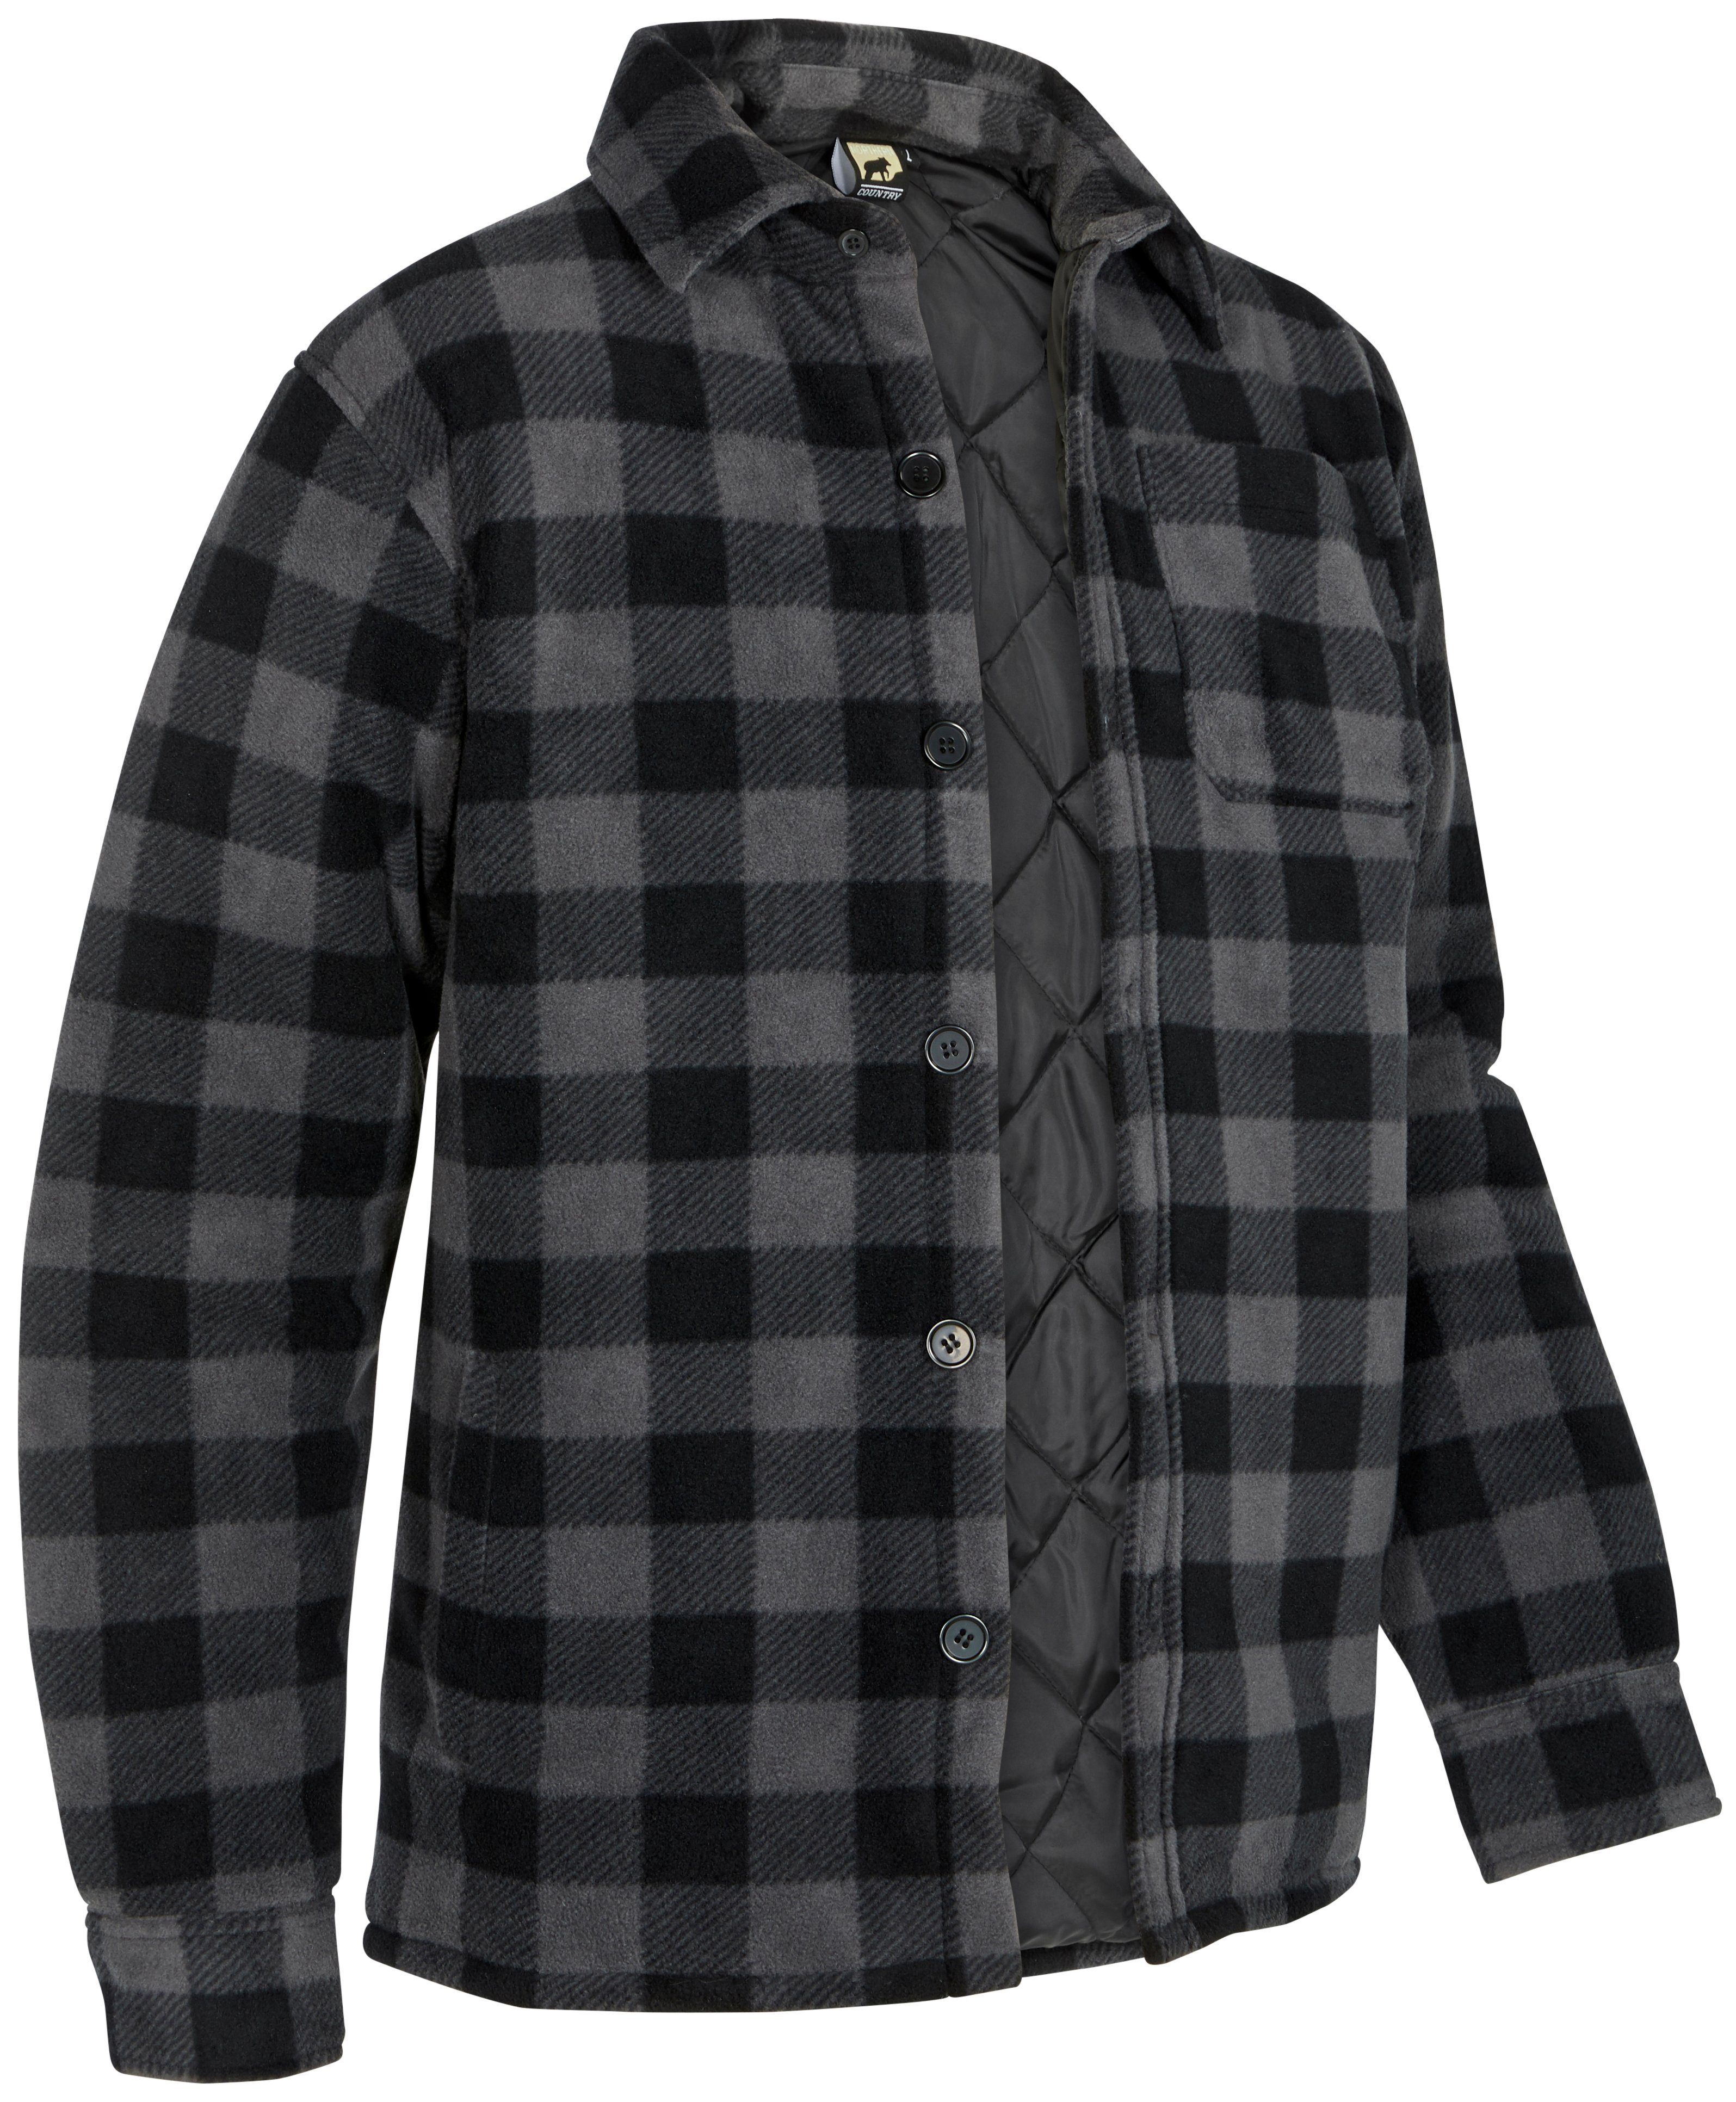 Northern Country Flanellhemd (als Jacke offen oder Hemd zugeknöpft zu tragen) warm gefüttert, mit 5 Taschen, mit verlängertem Rücken, Flanellstoff grau-schwarz